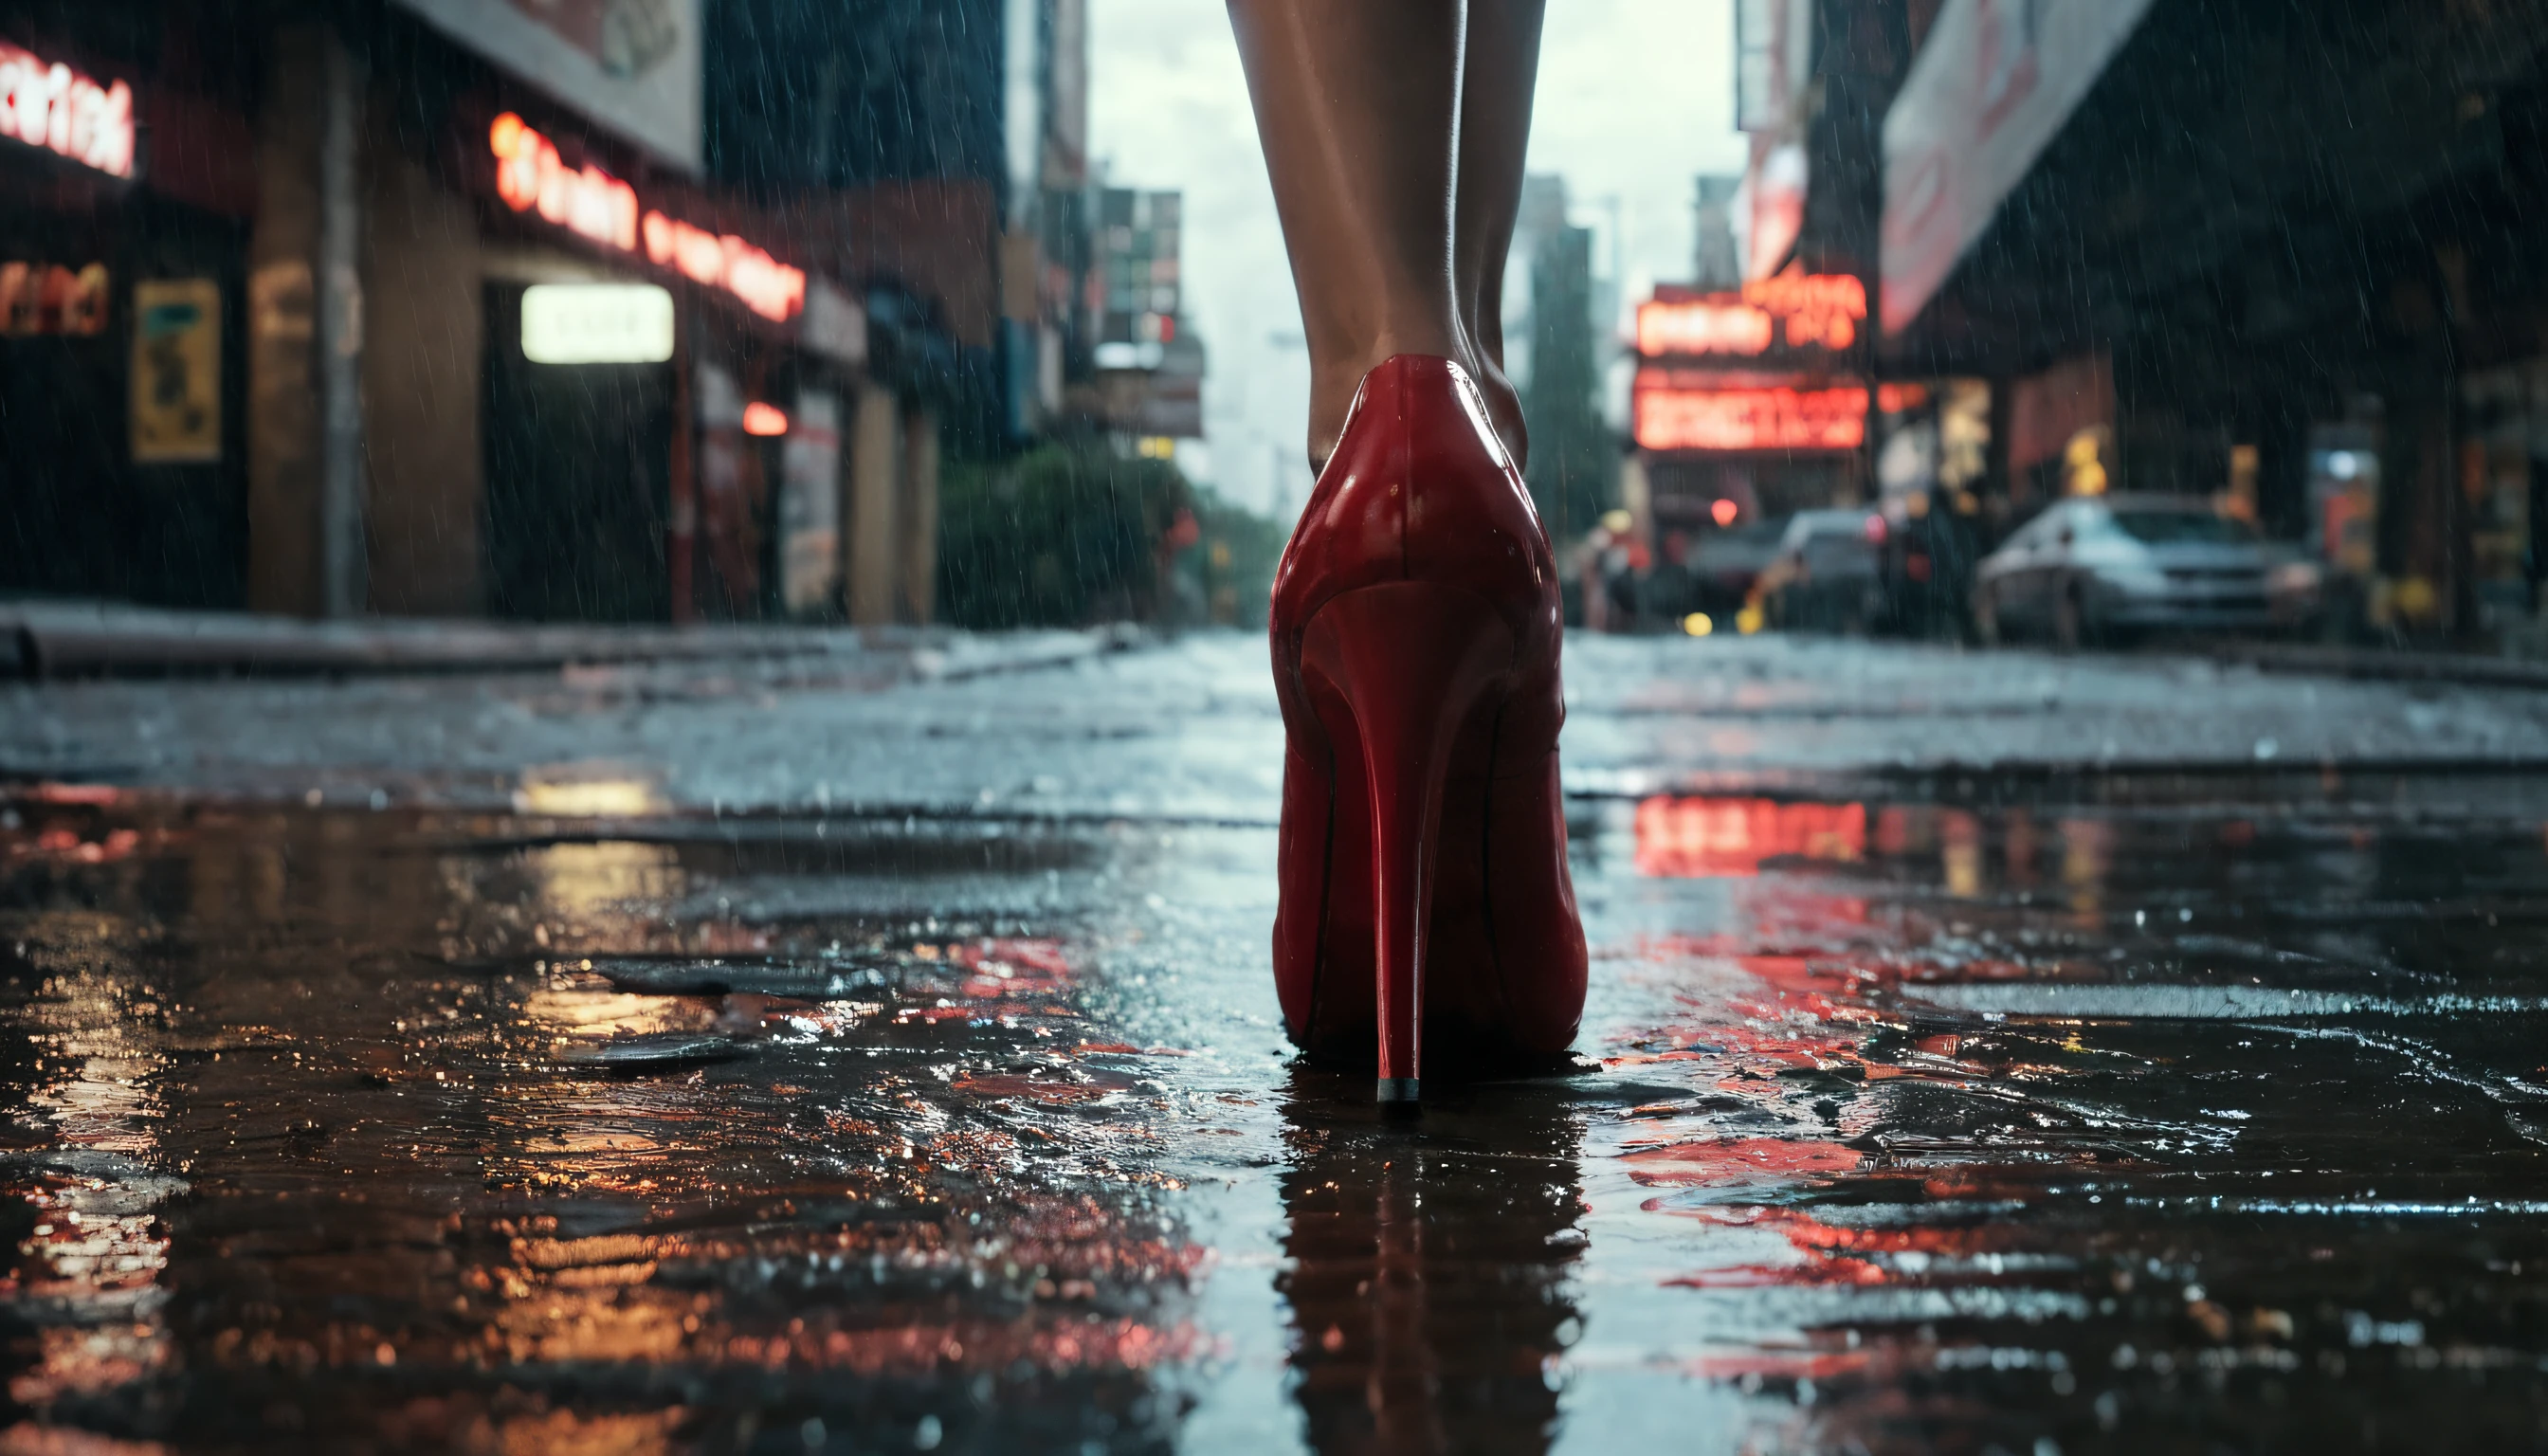 fotografia profissional premiada, Geografia nacional, vista para baixo no chão, movimentada rua Broadway Blvd à noite, drenar drenando chuva , close de um maço de cigarros branco vazio flutuando em uma grade de esgoto no centro de Nova York em 2050, após uma noite chuvosa, uma mulher de vestido preto e sapatos Leboutin, sapatos vermelhos de salto, andando sobre o ralo, , hiper-realista, ciberpunk, cena cinematográfica, paisagem urbana, morose, iluminado por néon, Vista de cima à noite durante fortes chuvas, ruas molhadas reflexivas, fotorrealista, extremamente bem feito, Arri Alexa LF, Lente de 14mm, listras claras, DOF, Lens Flares, 8K, hdr, iluminação volumétrica, Lens Flares,Detalhes intrincados, cru